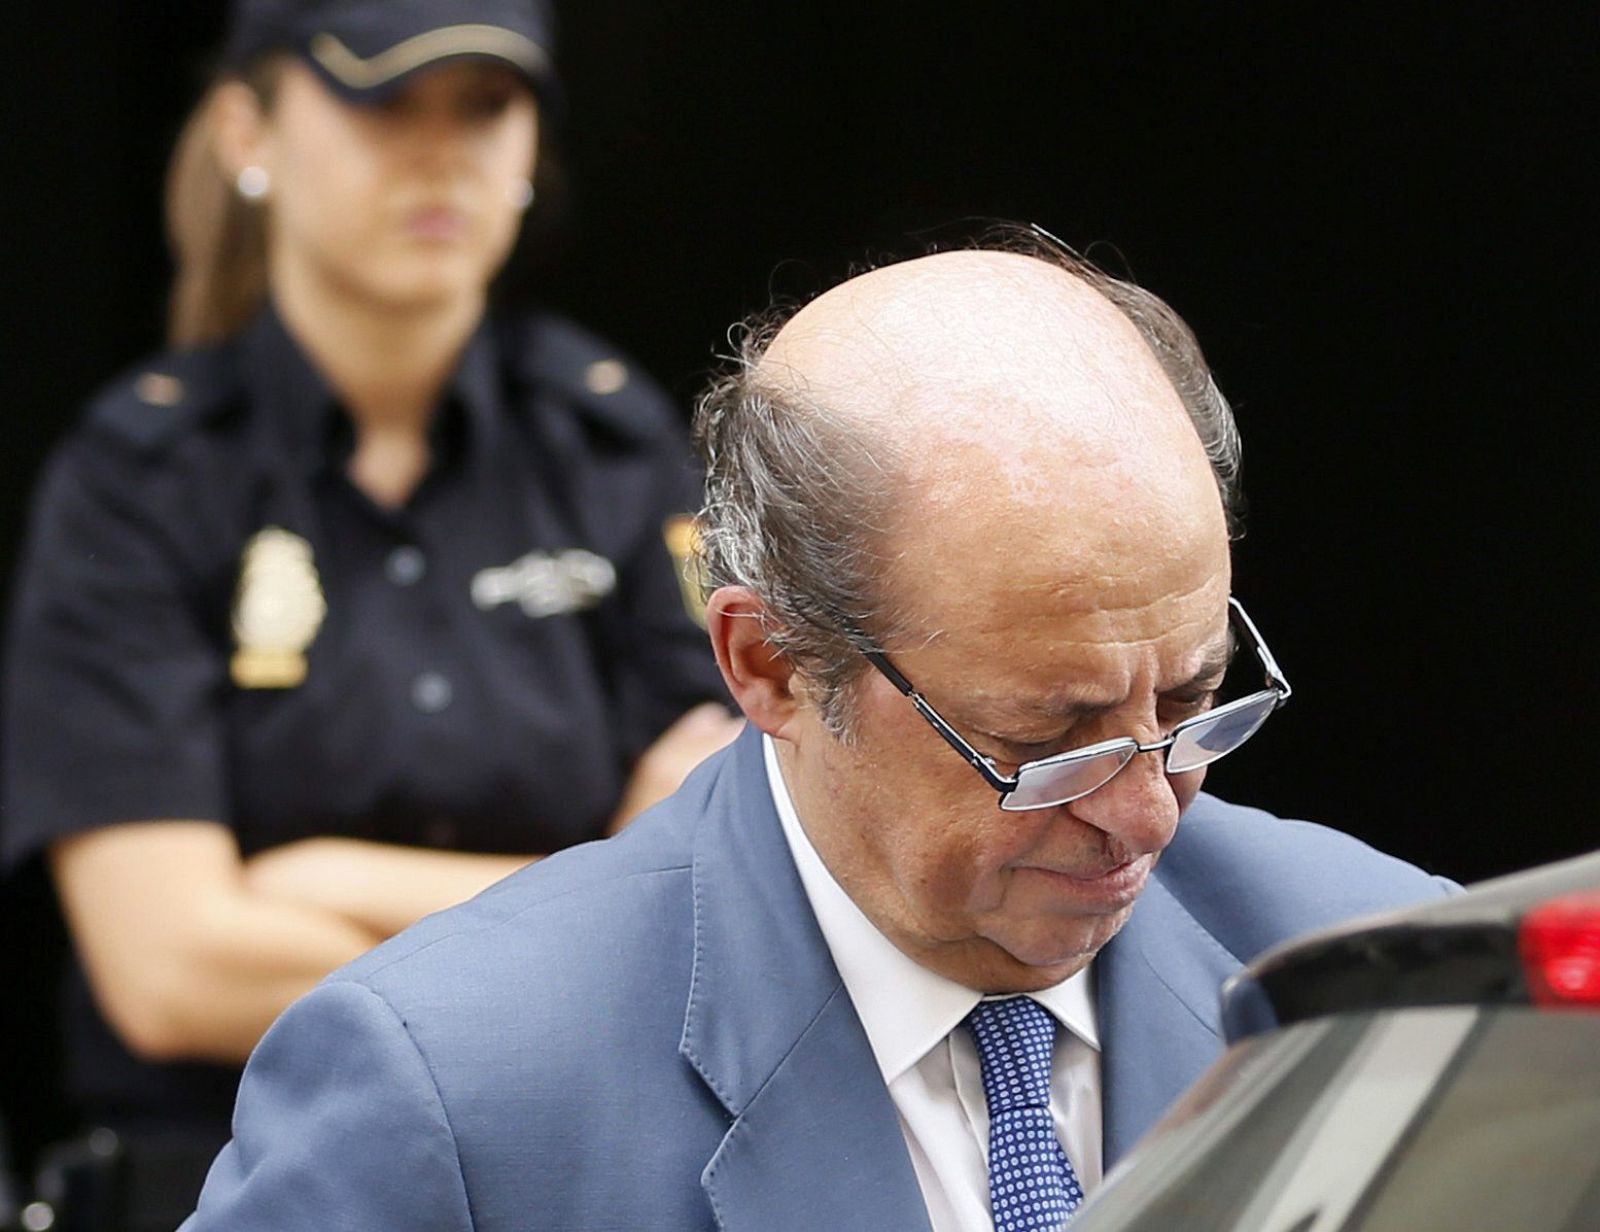 El auditor de Gowex José Antonio Díaz, a su salida de la Audiencia Nacional